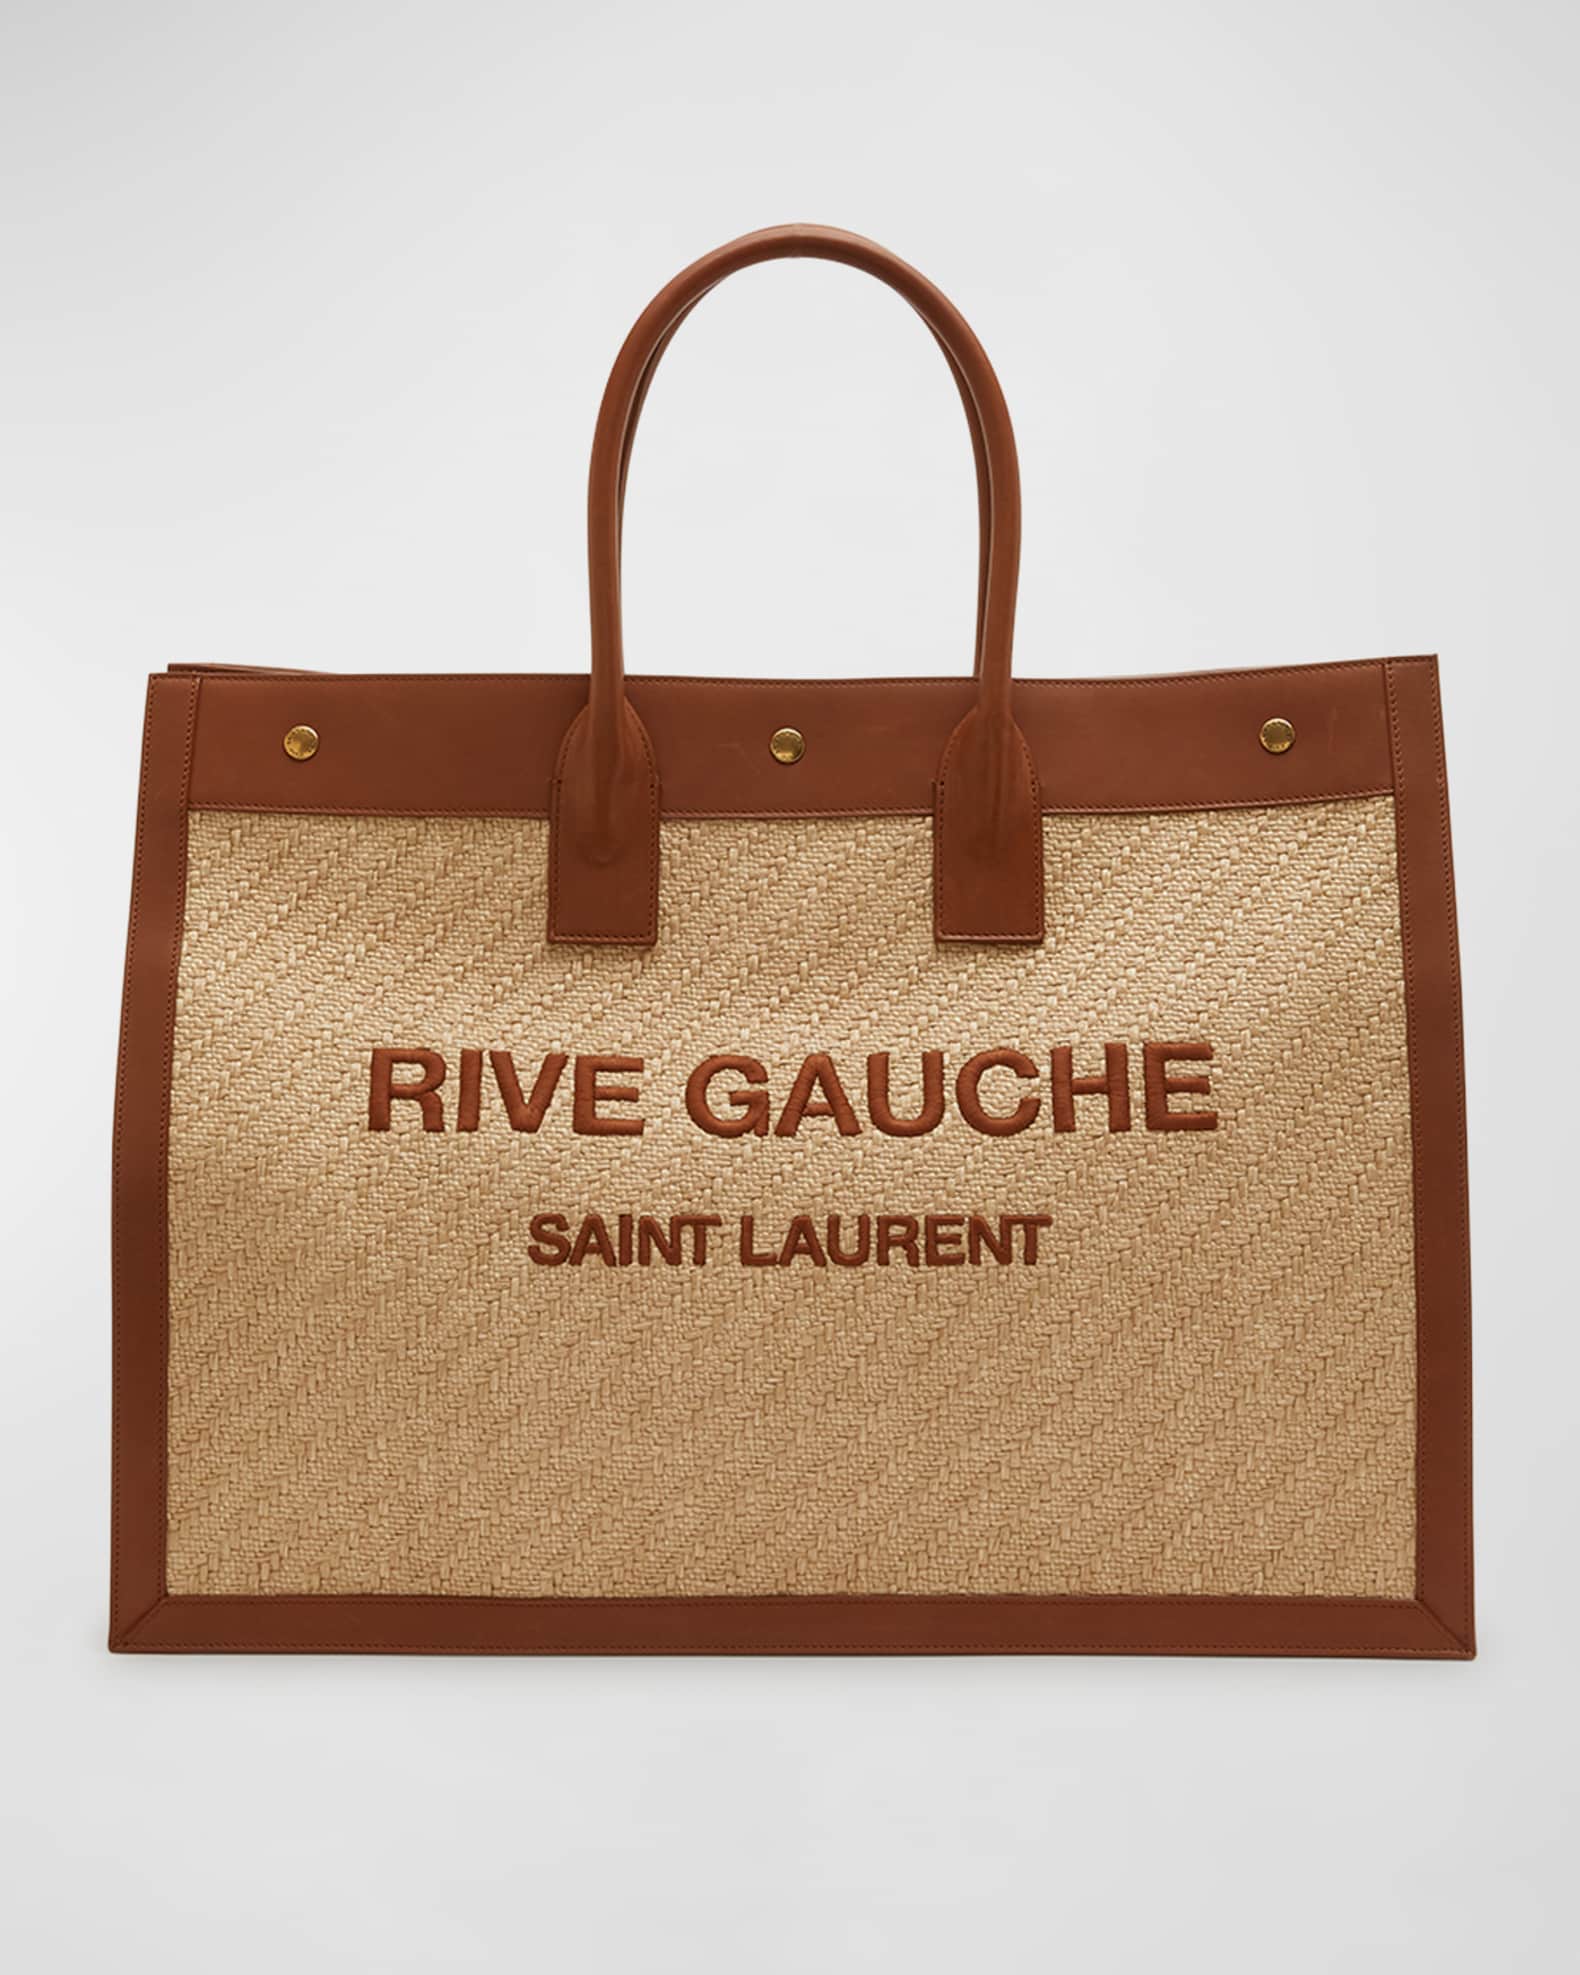 Saint Laurent Rive Gauche Large Tote